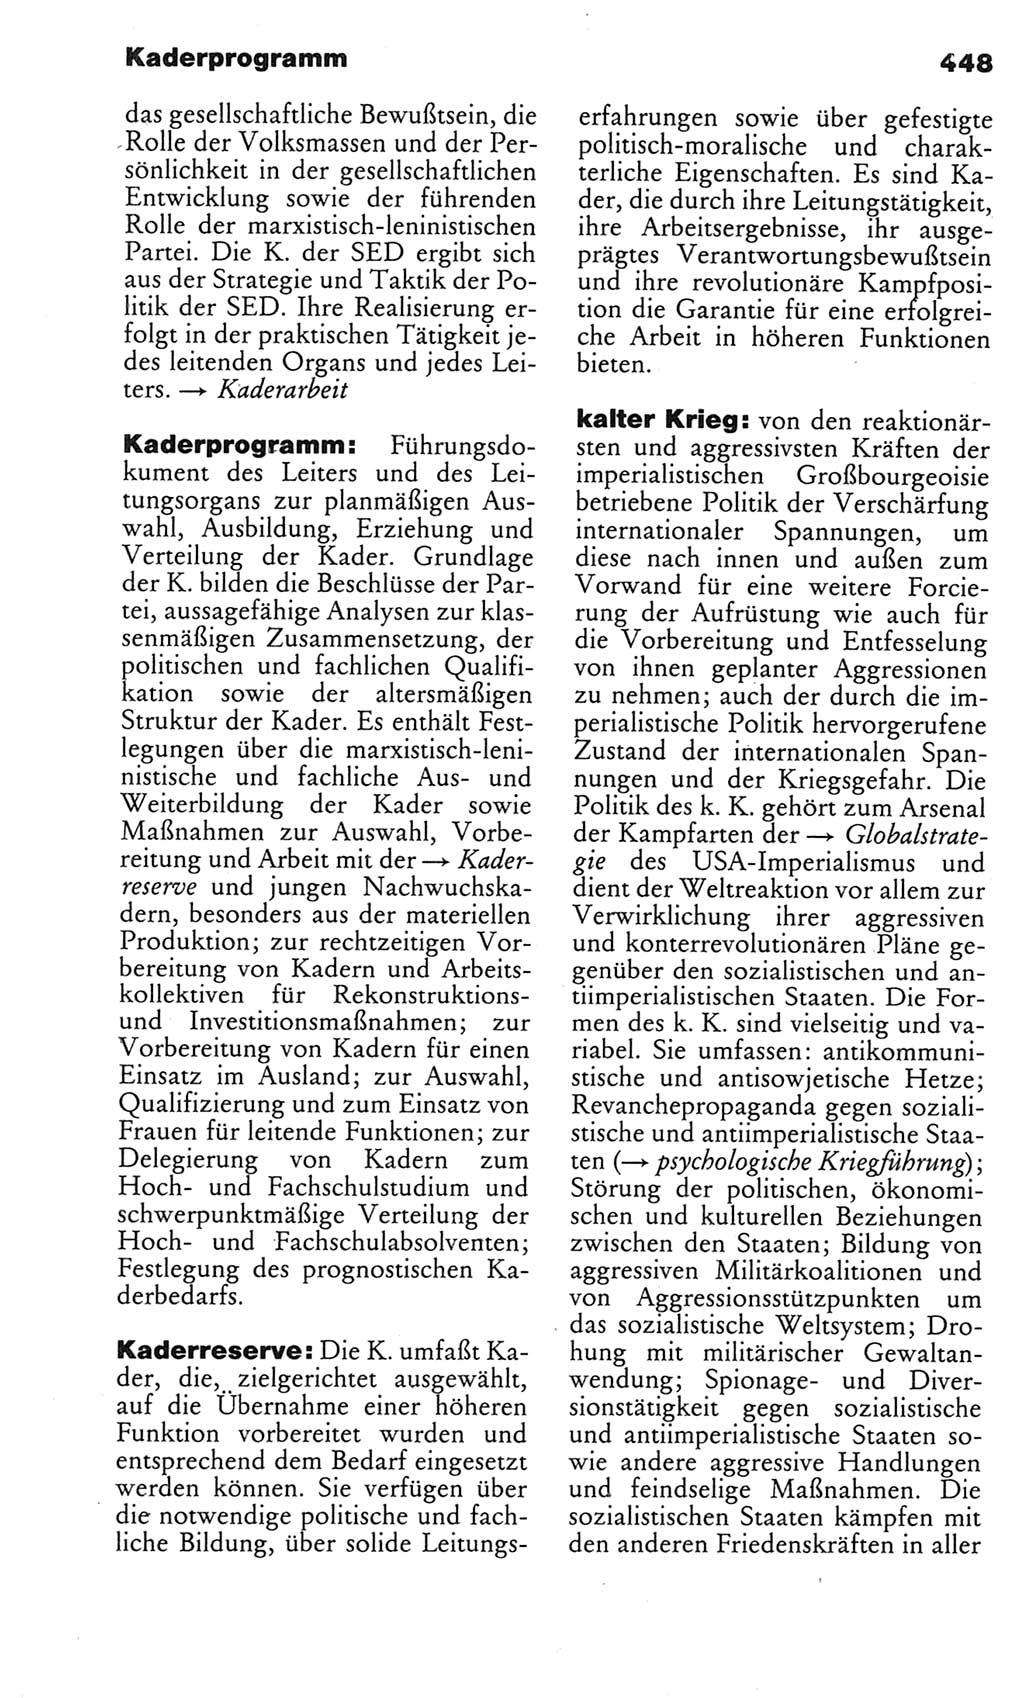 Kleines politisches Wörterbuch [Deutsche Demokratische Republik (DDR)] 1983, Seite 448 (Kl. pol. Wb. DDR 1983, S. 448)